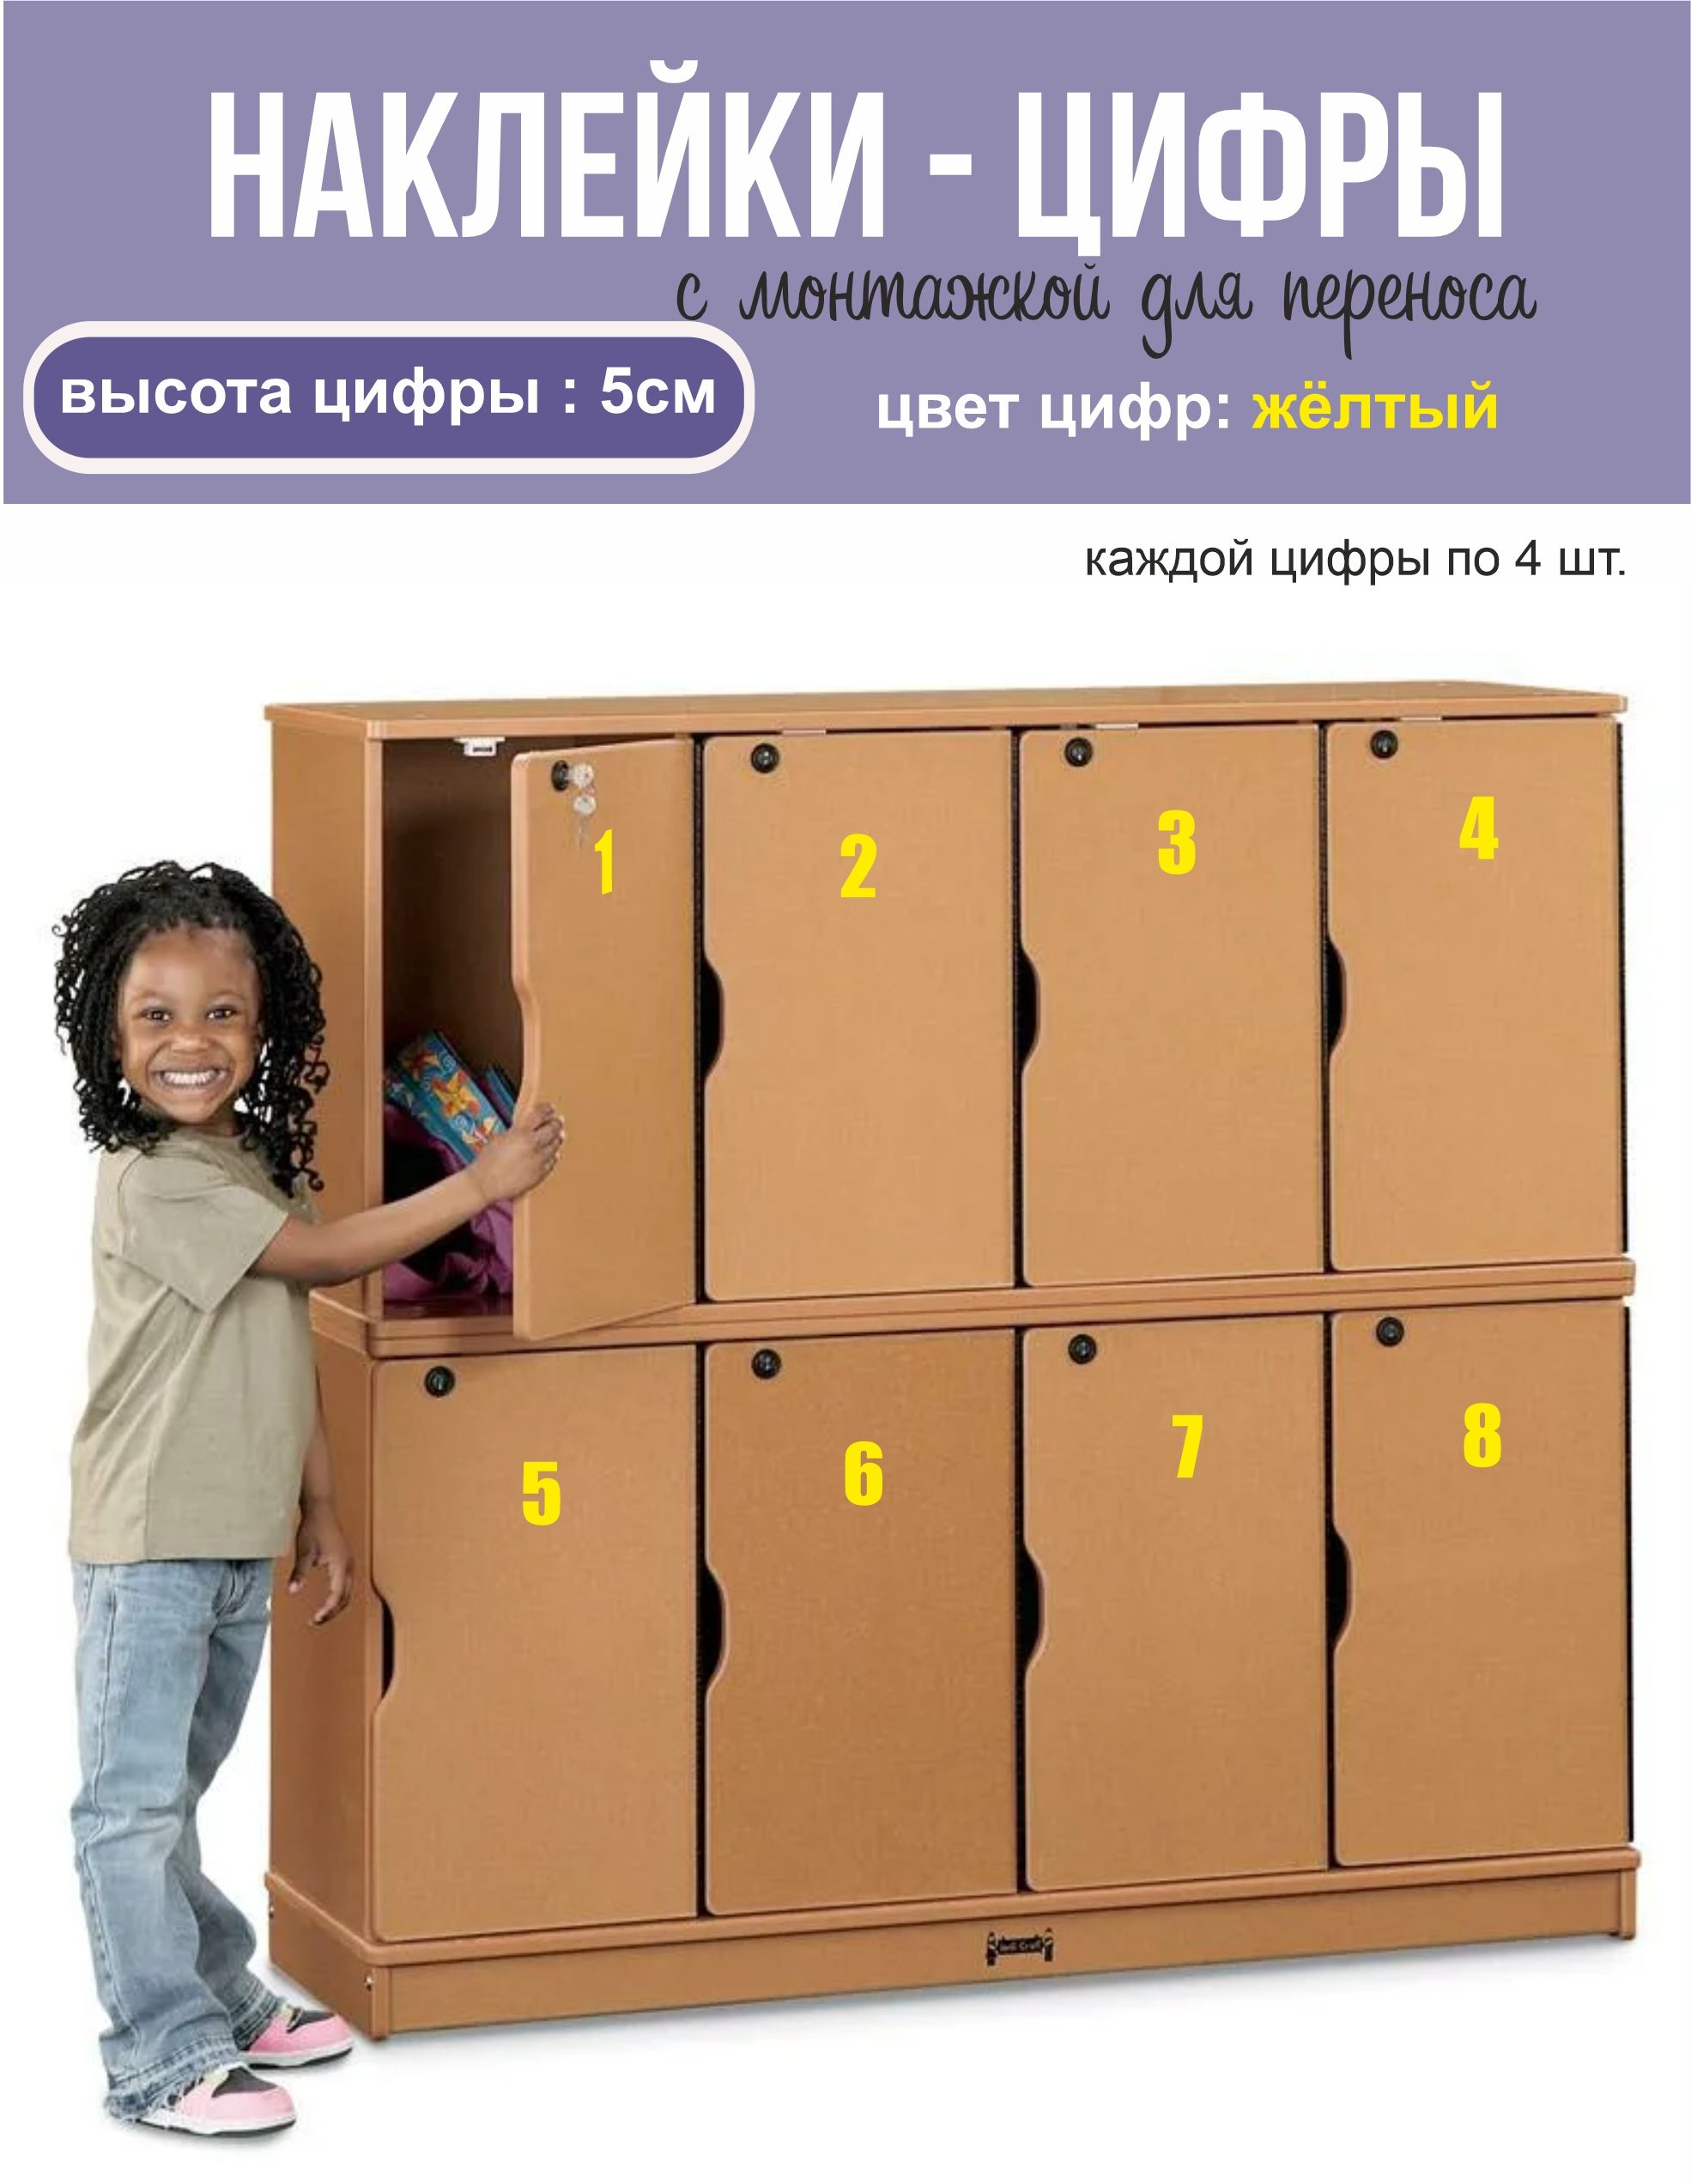 Шкафчики для детей в школу